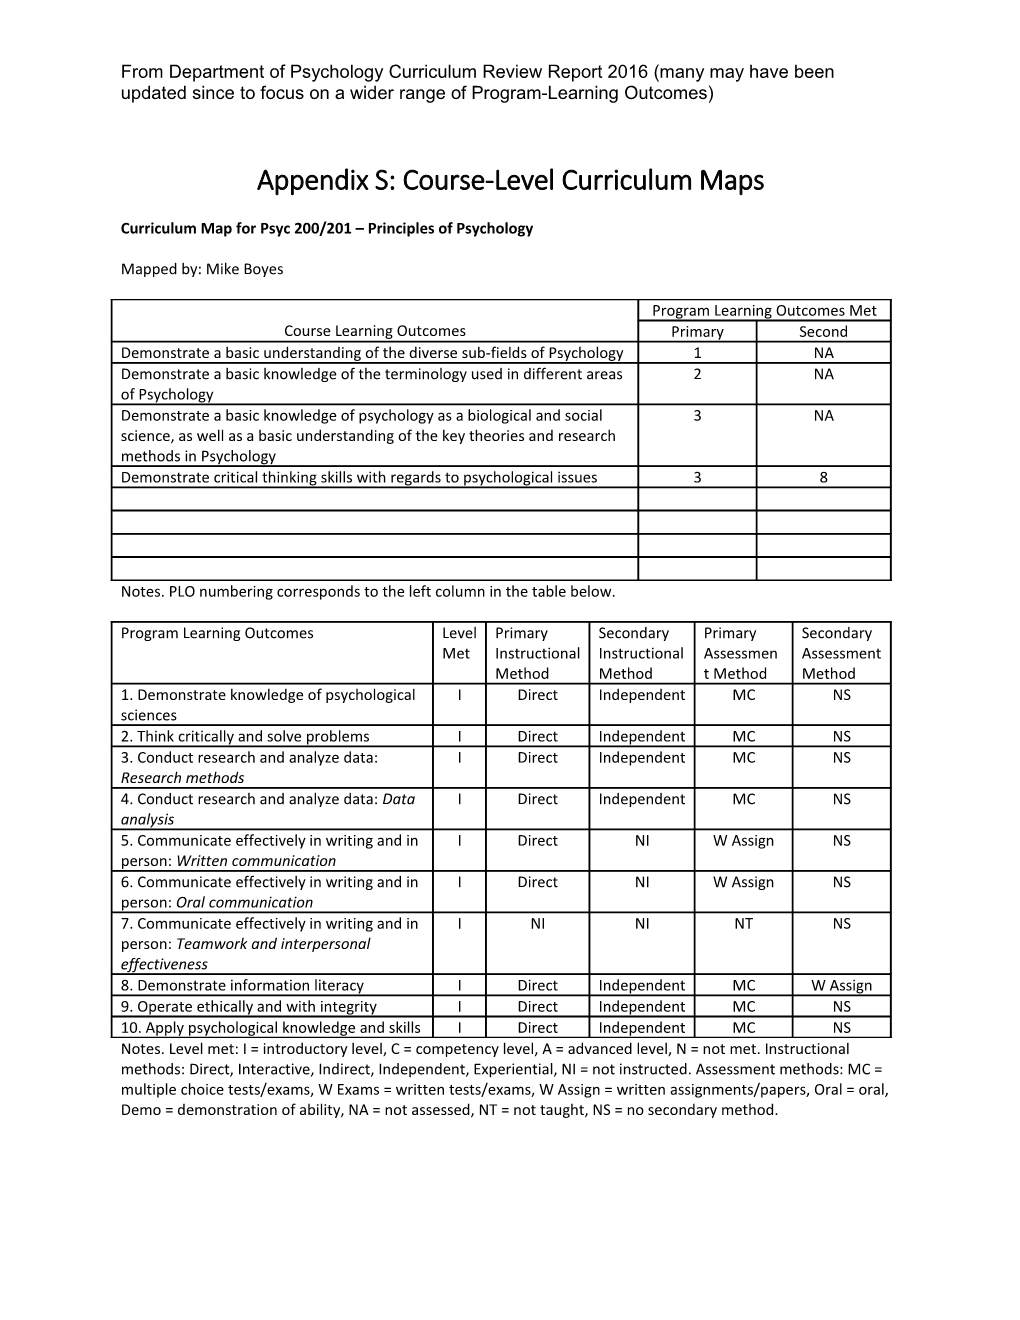 Appendix S: Course-Level Curriculum Maps